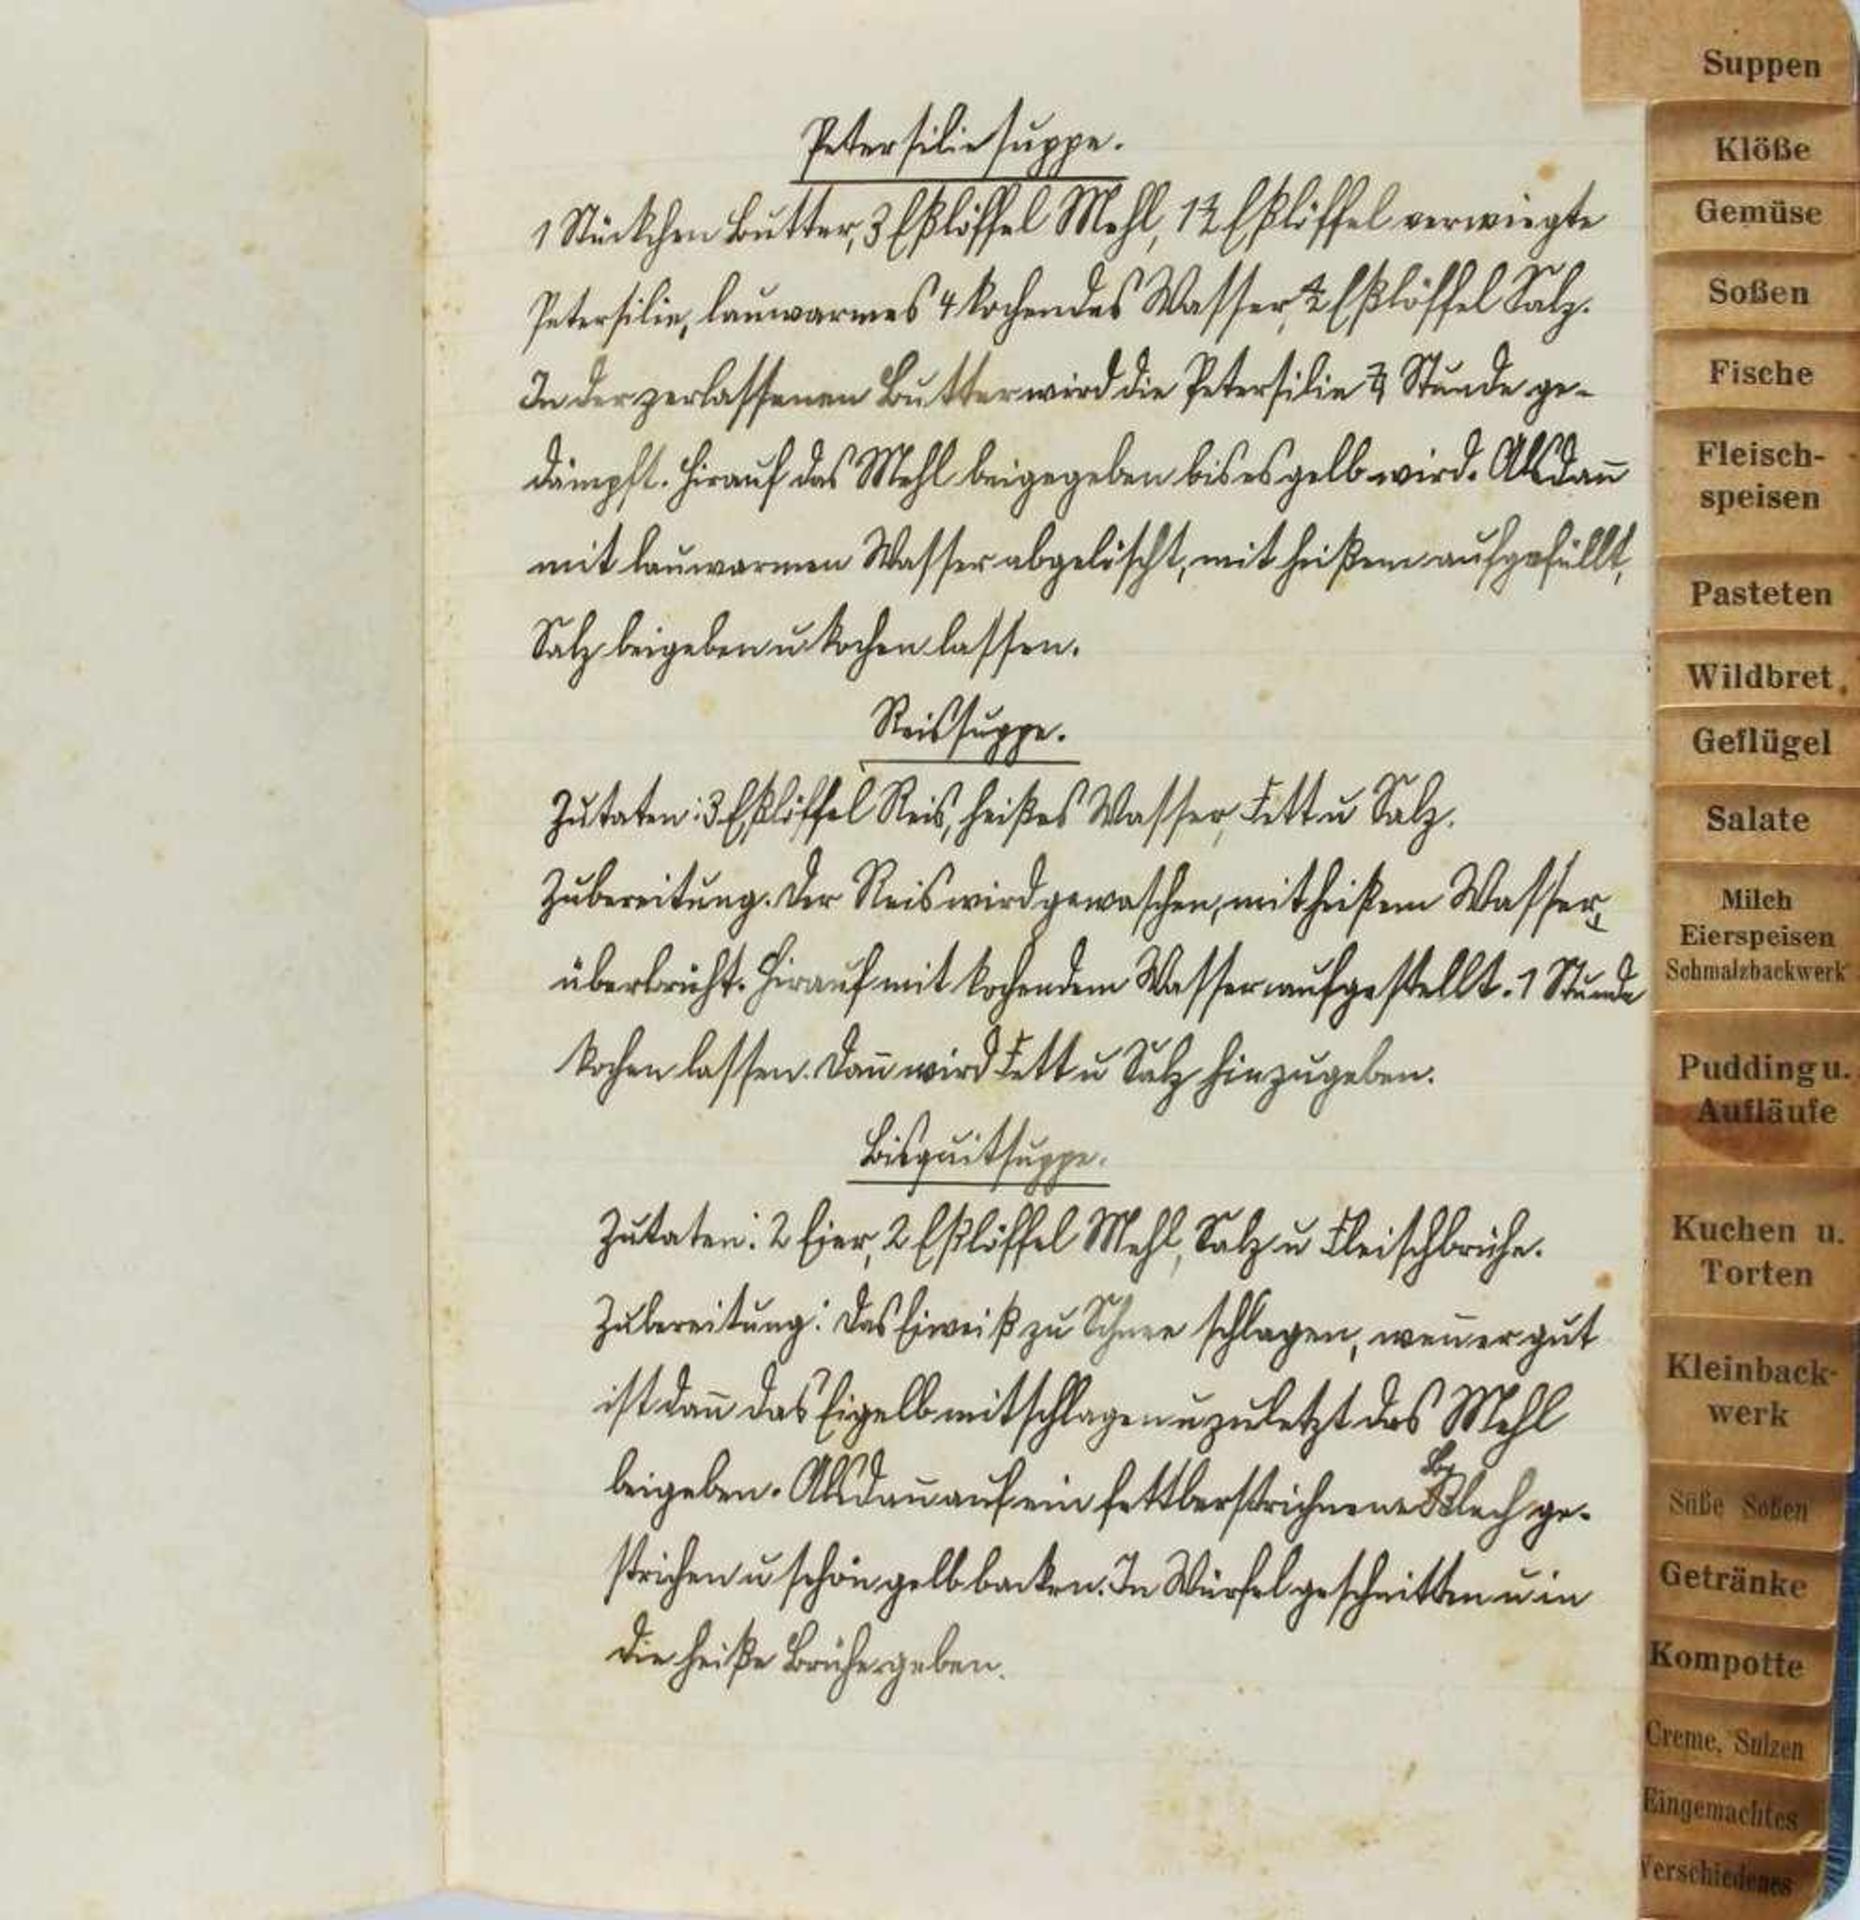 Kochbuch: Handschriftliches Kochbuch mit Einträgen u.a. zu Suppen, Klößen, Gemüse, Fischen, - Bild 2 aus 2